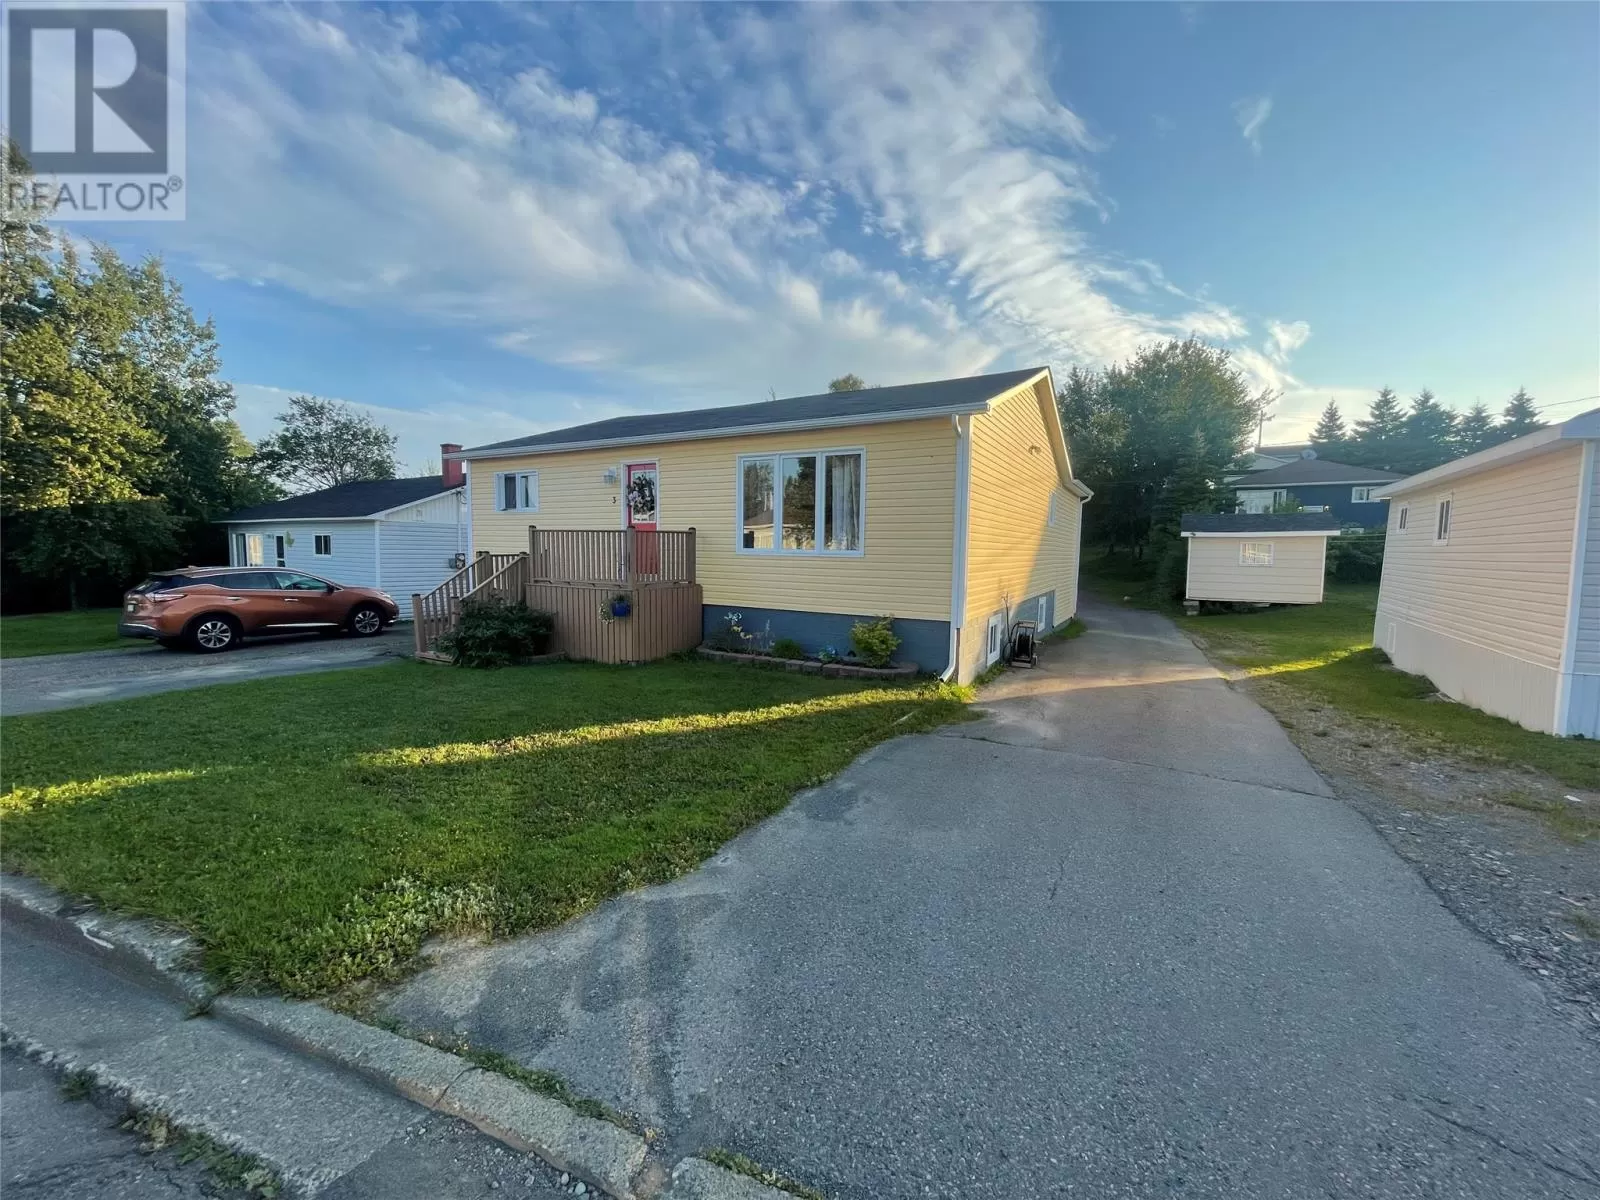 House for rent: 3 Wheeler's Avenue, Grand Falls-Windsor, Newfoundland & Labrador A2B 1J3